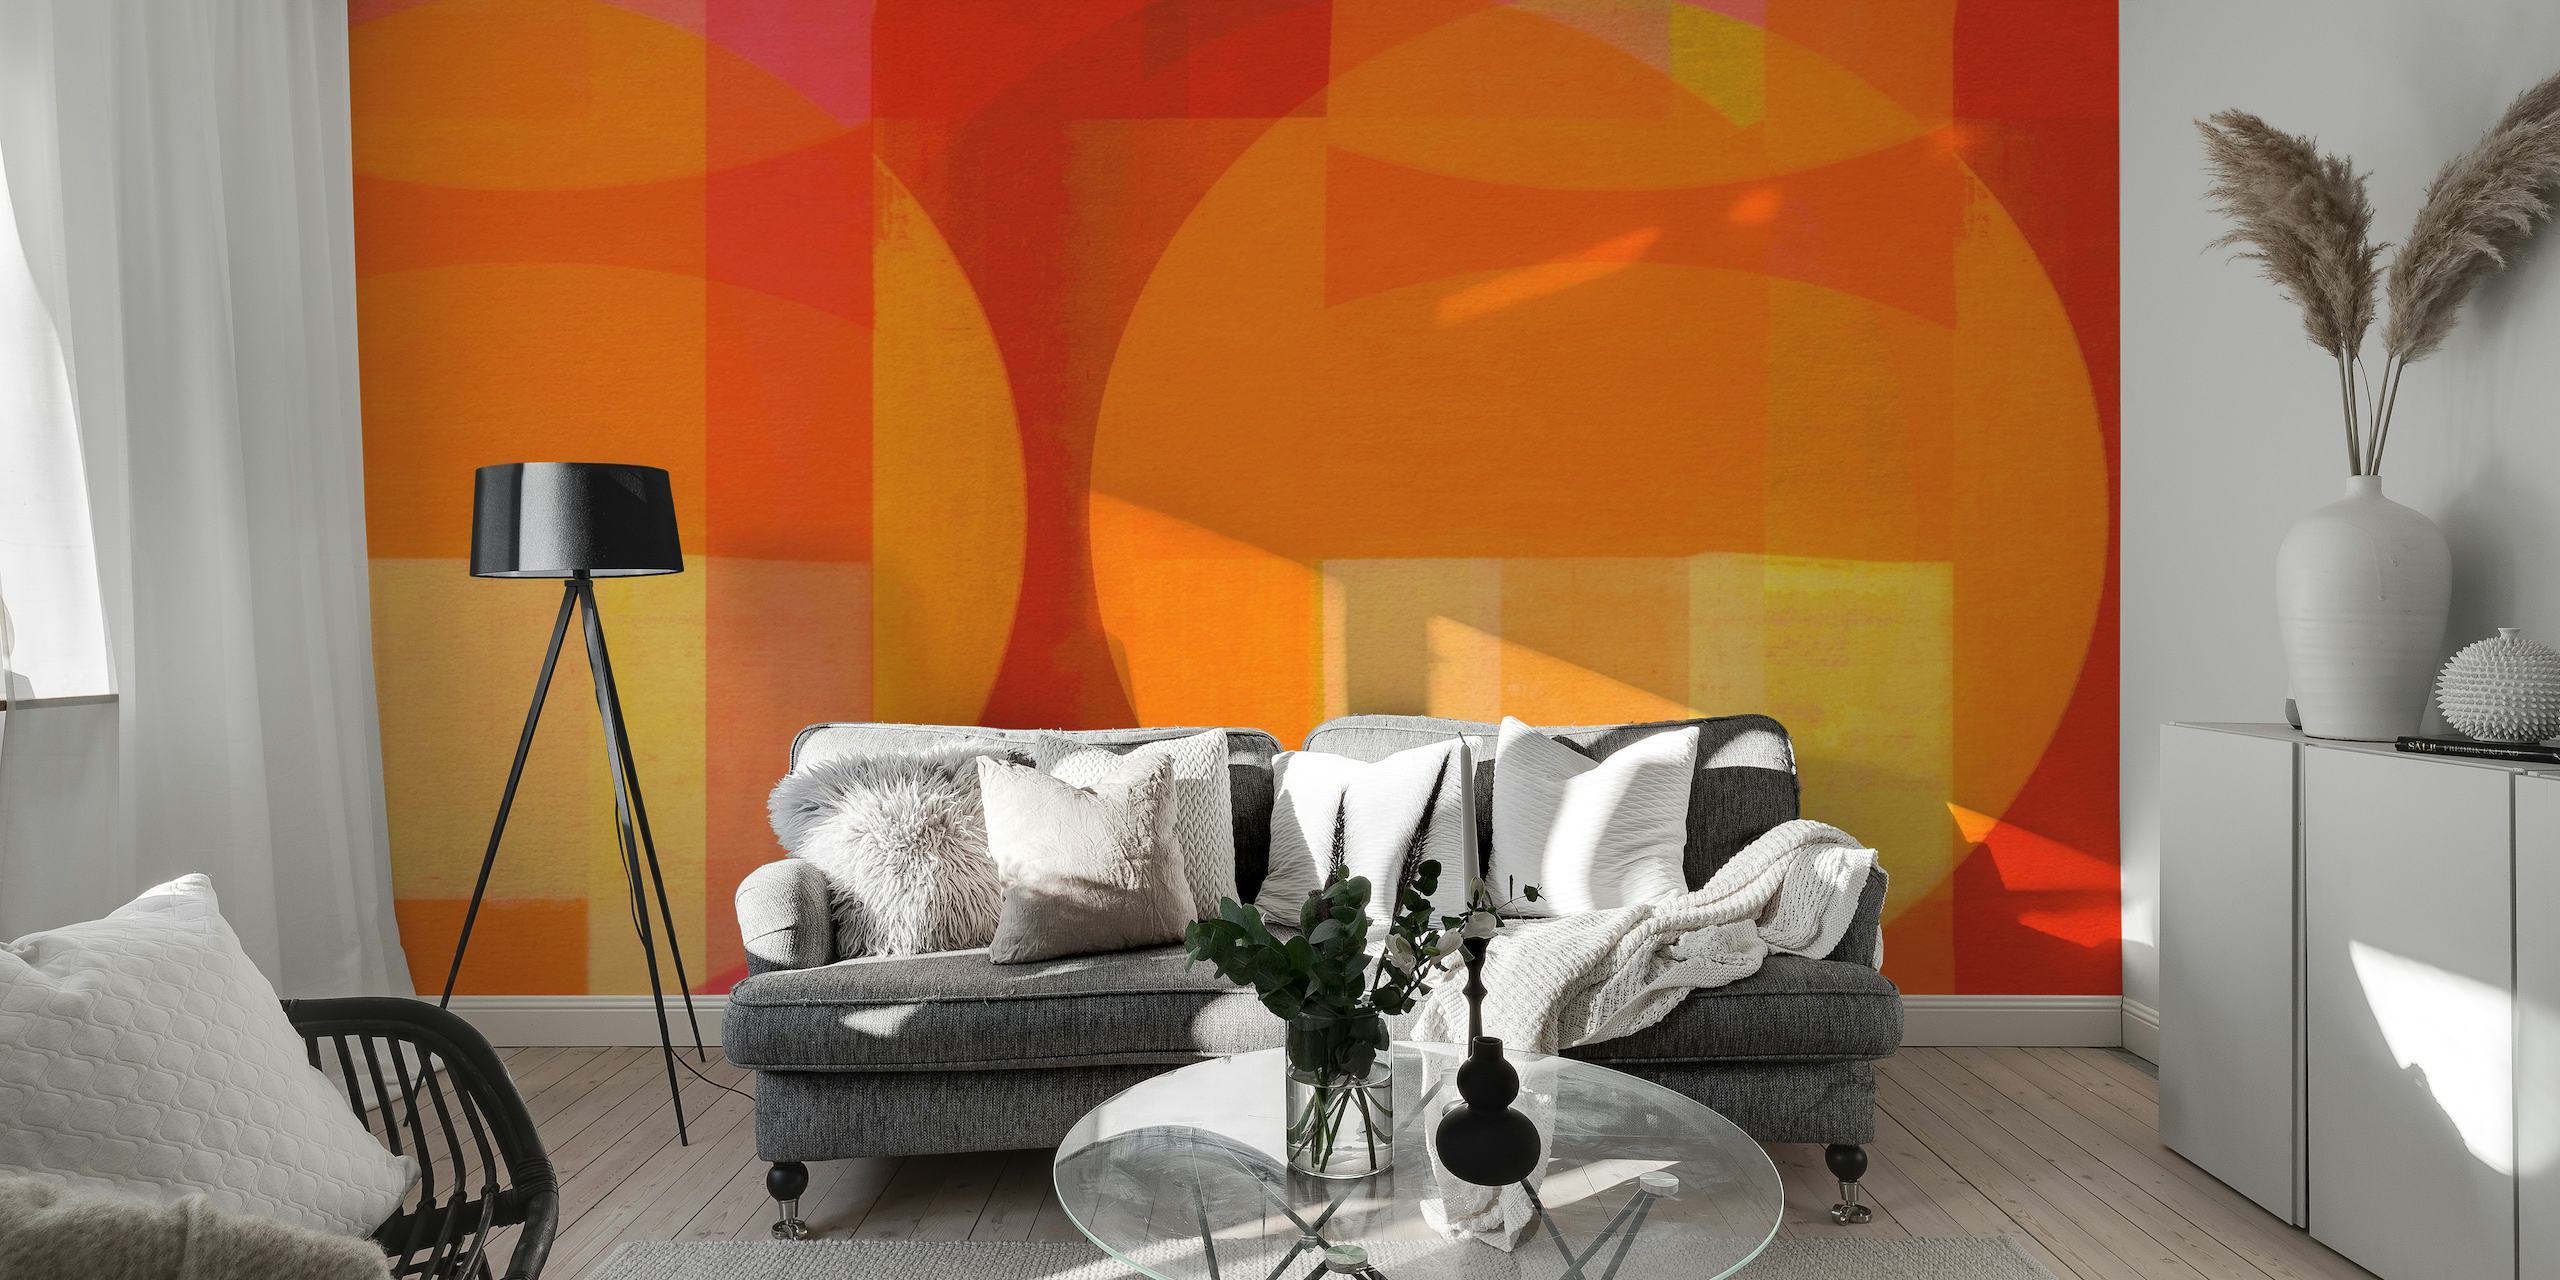 Abstrakt tapet i Bauhaus-stil i en levande blandning av röda, orange och gula geometriska former.